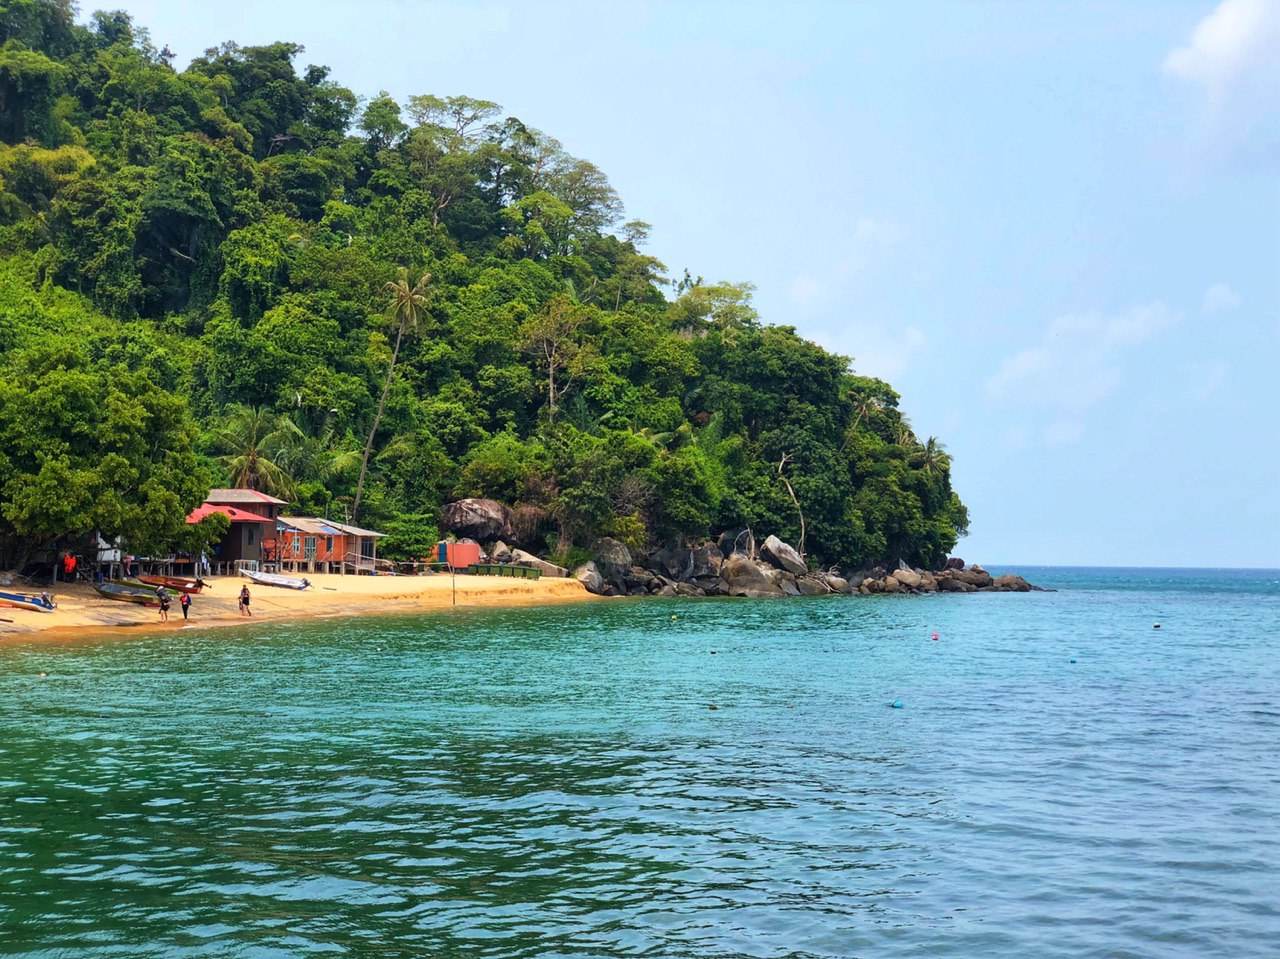 Aktiviti Di Pulau Tioman - Berjaya Tioman Resort, Pulau Tioman - Findbulous Travel / Apabila pergi ke pulau tioman tidak sah rasanya kalau tidak melakukan aktiviti snorkeling.